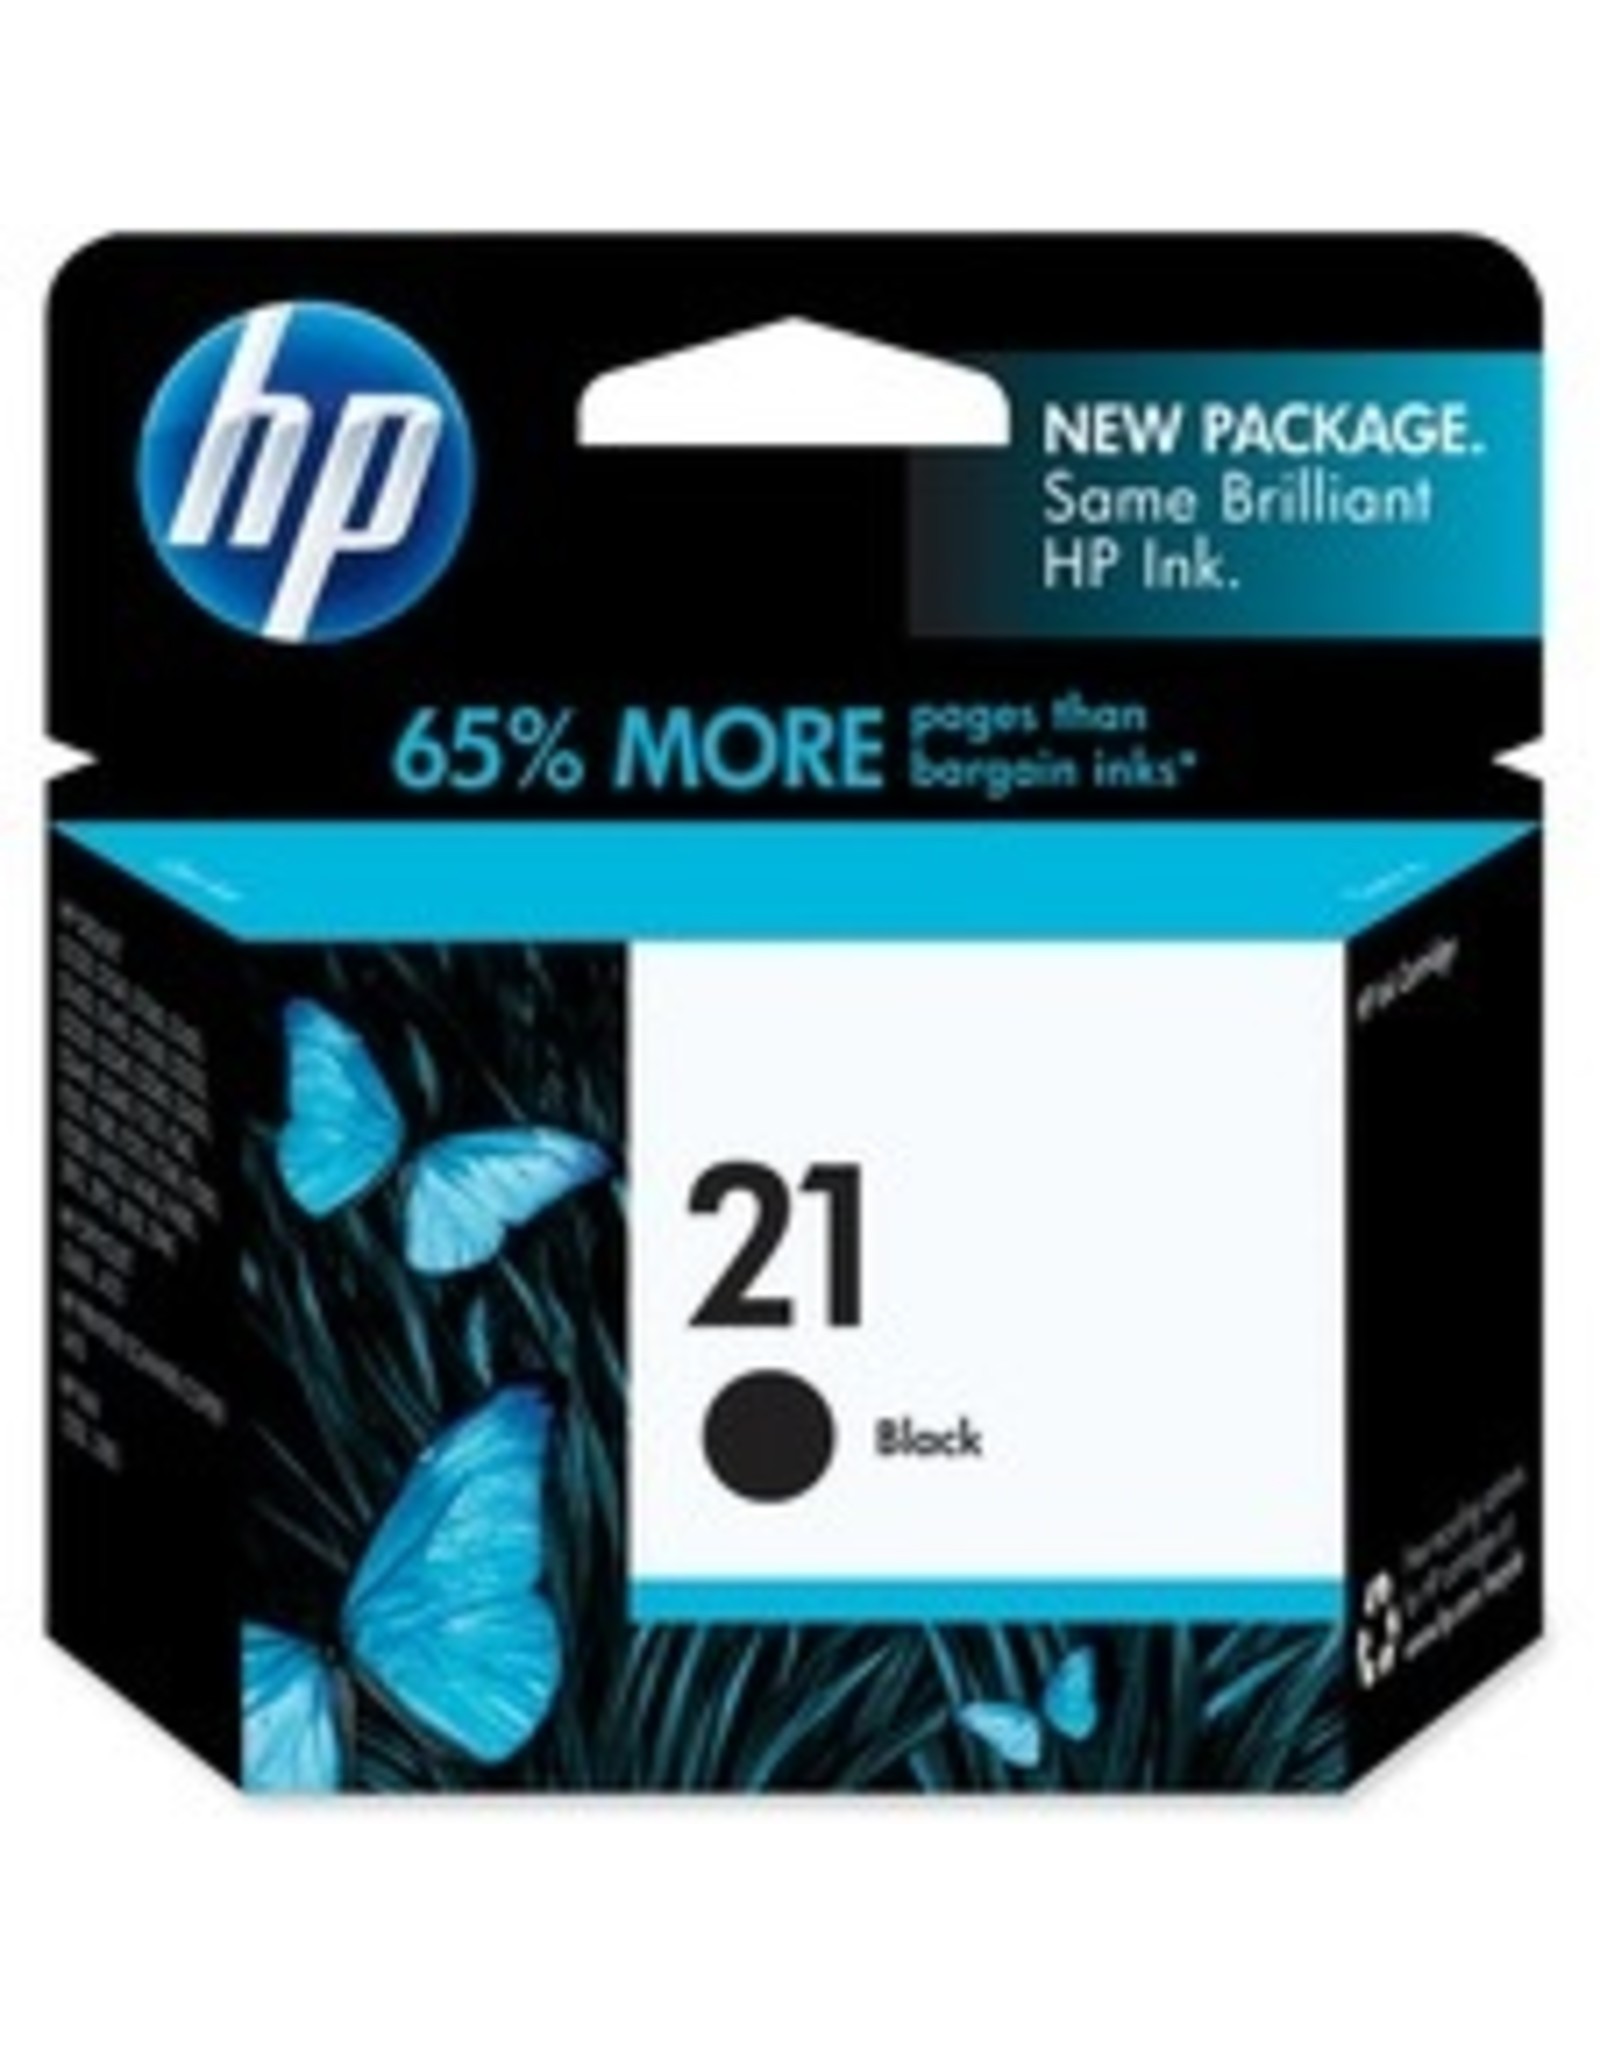 HP HP 21 Ink Cartridge - Single Pack Black